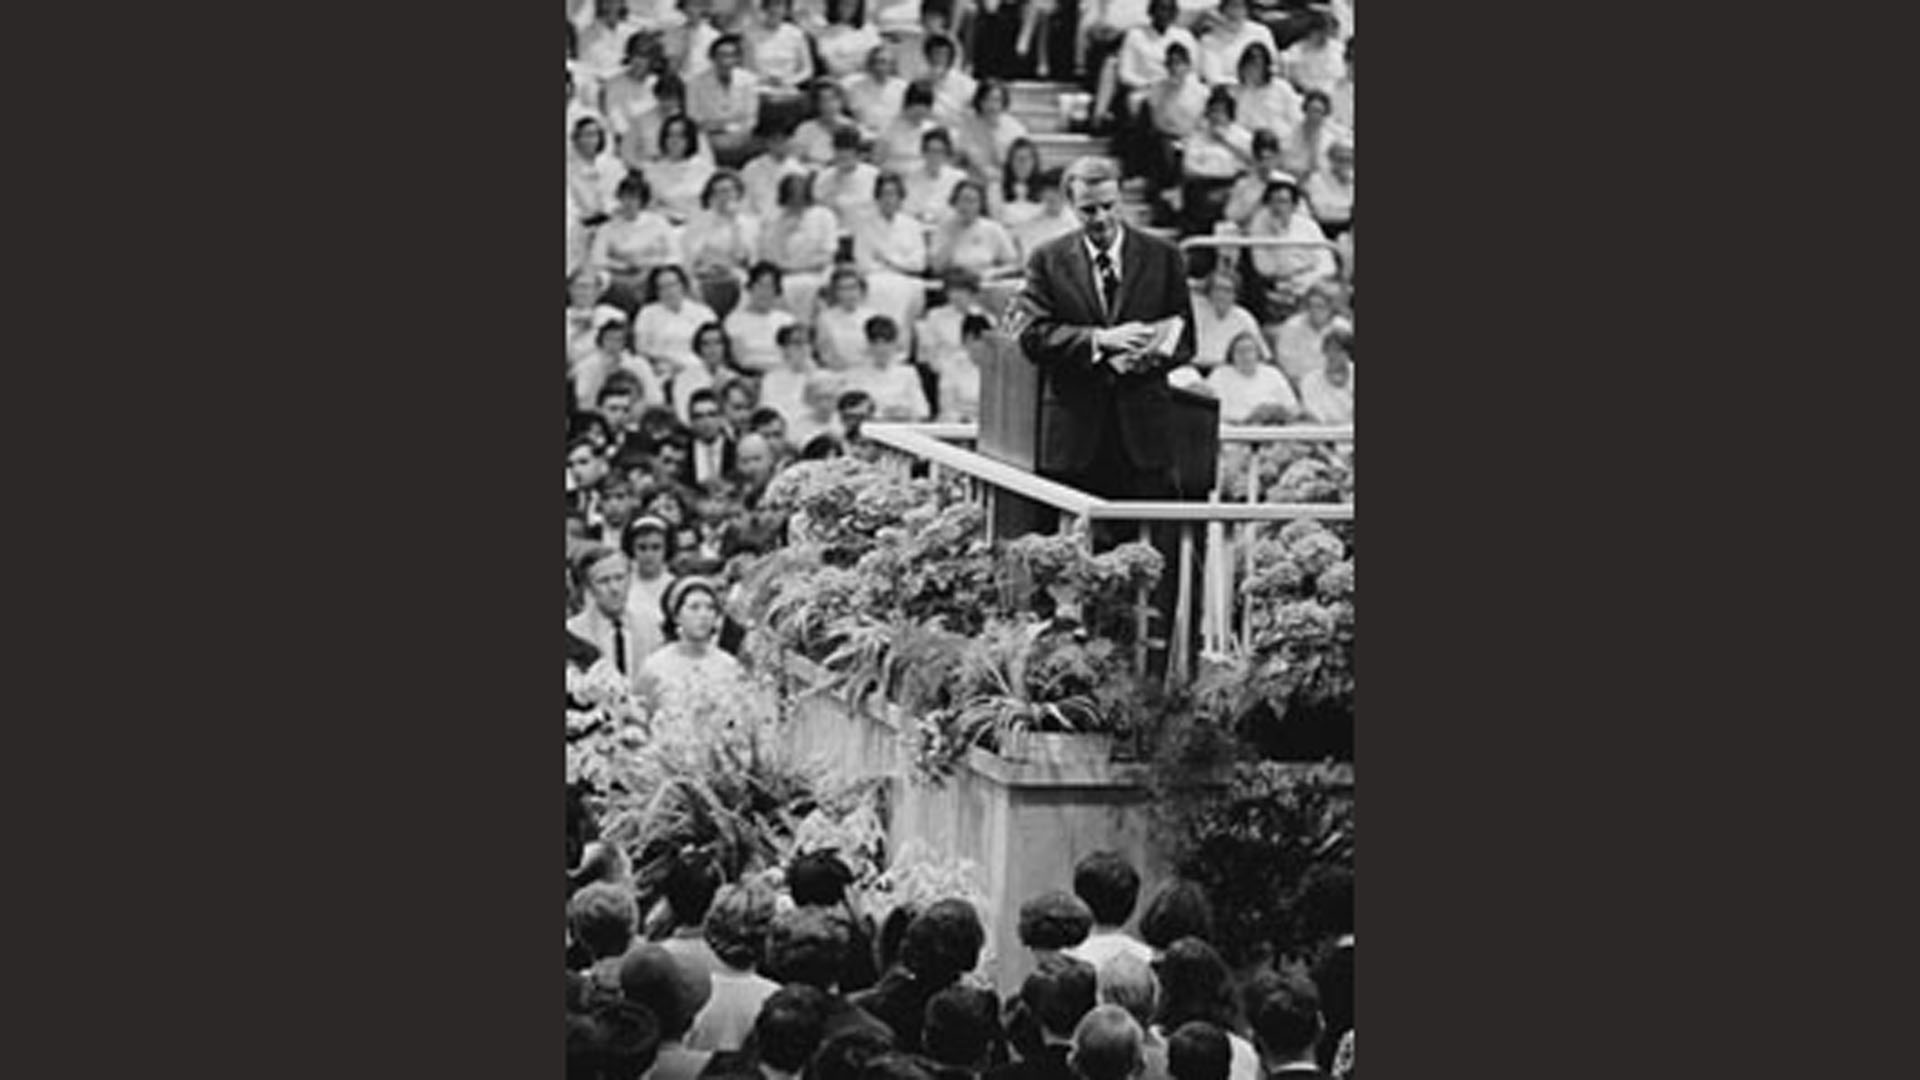 Graham im Jahre 1966 während einer Verkündigung